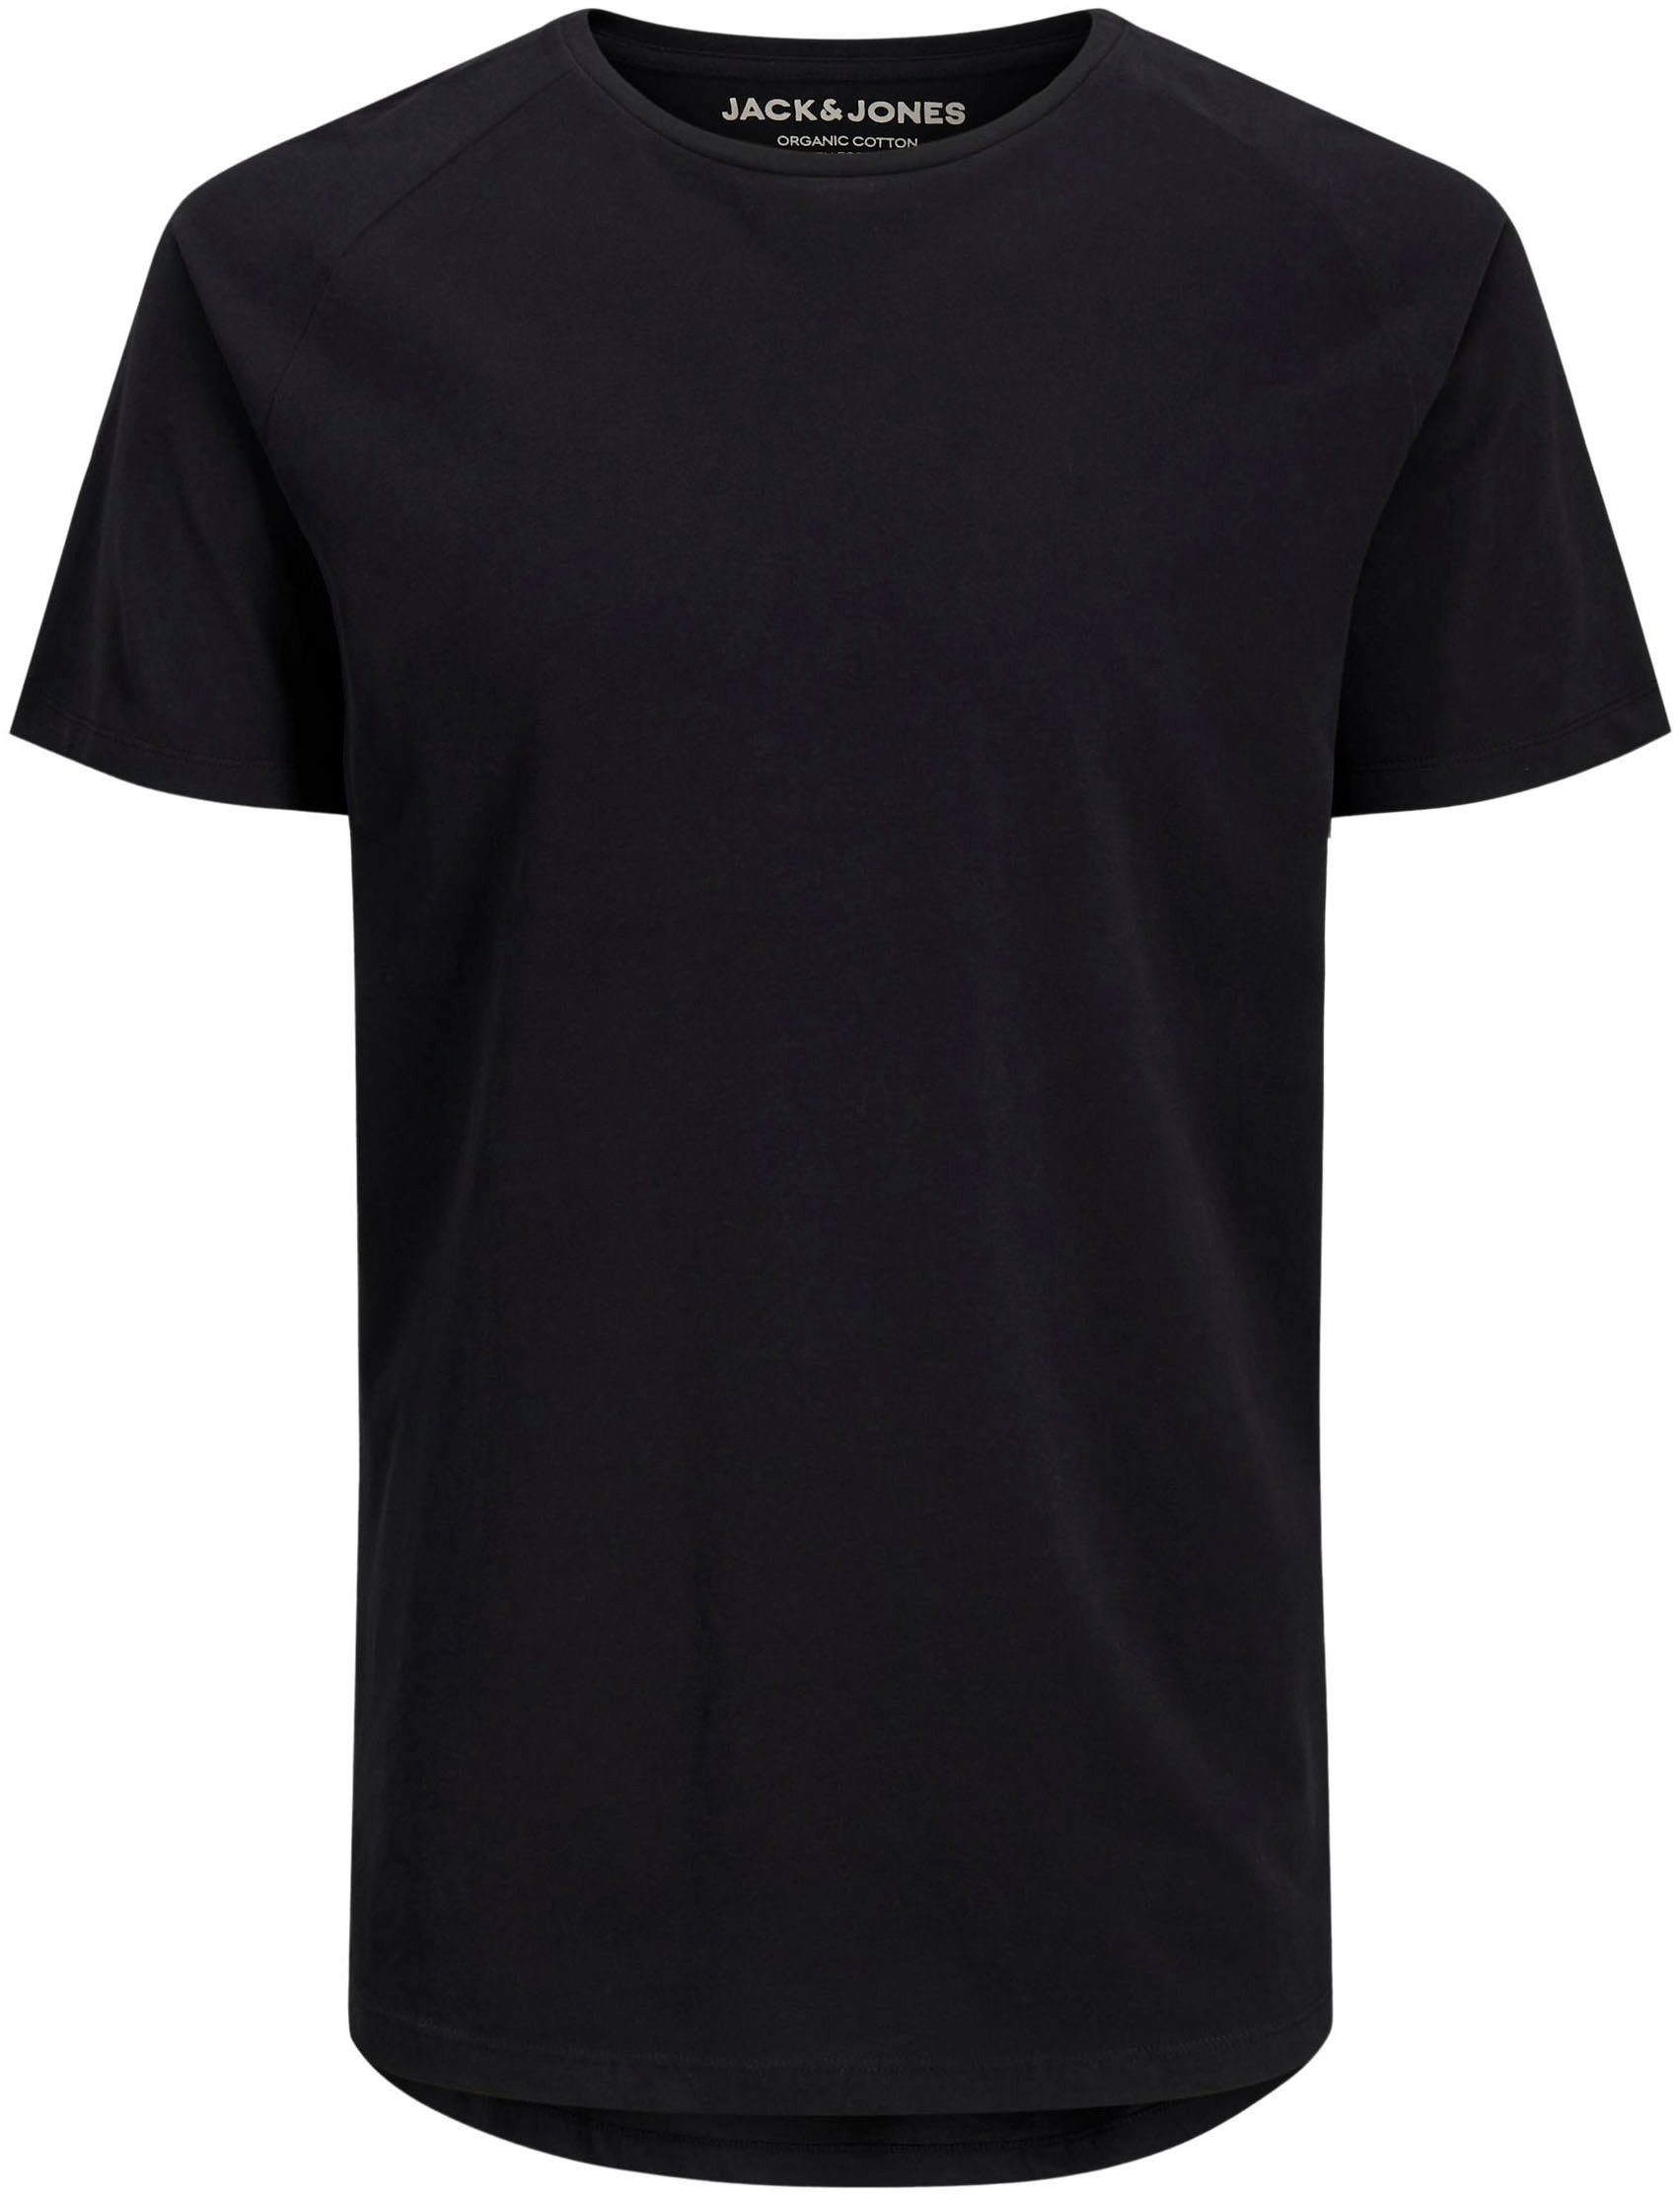 Jack & Jones TEE black CURVED T-Shirt